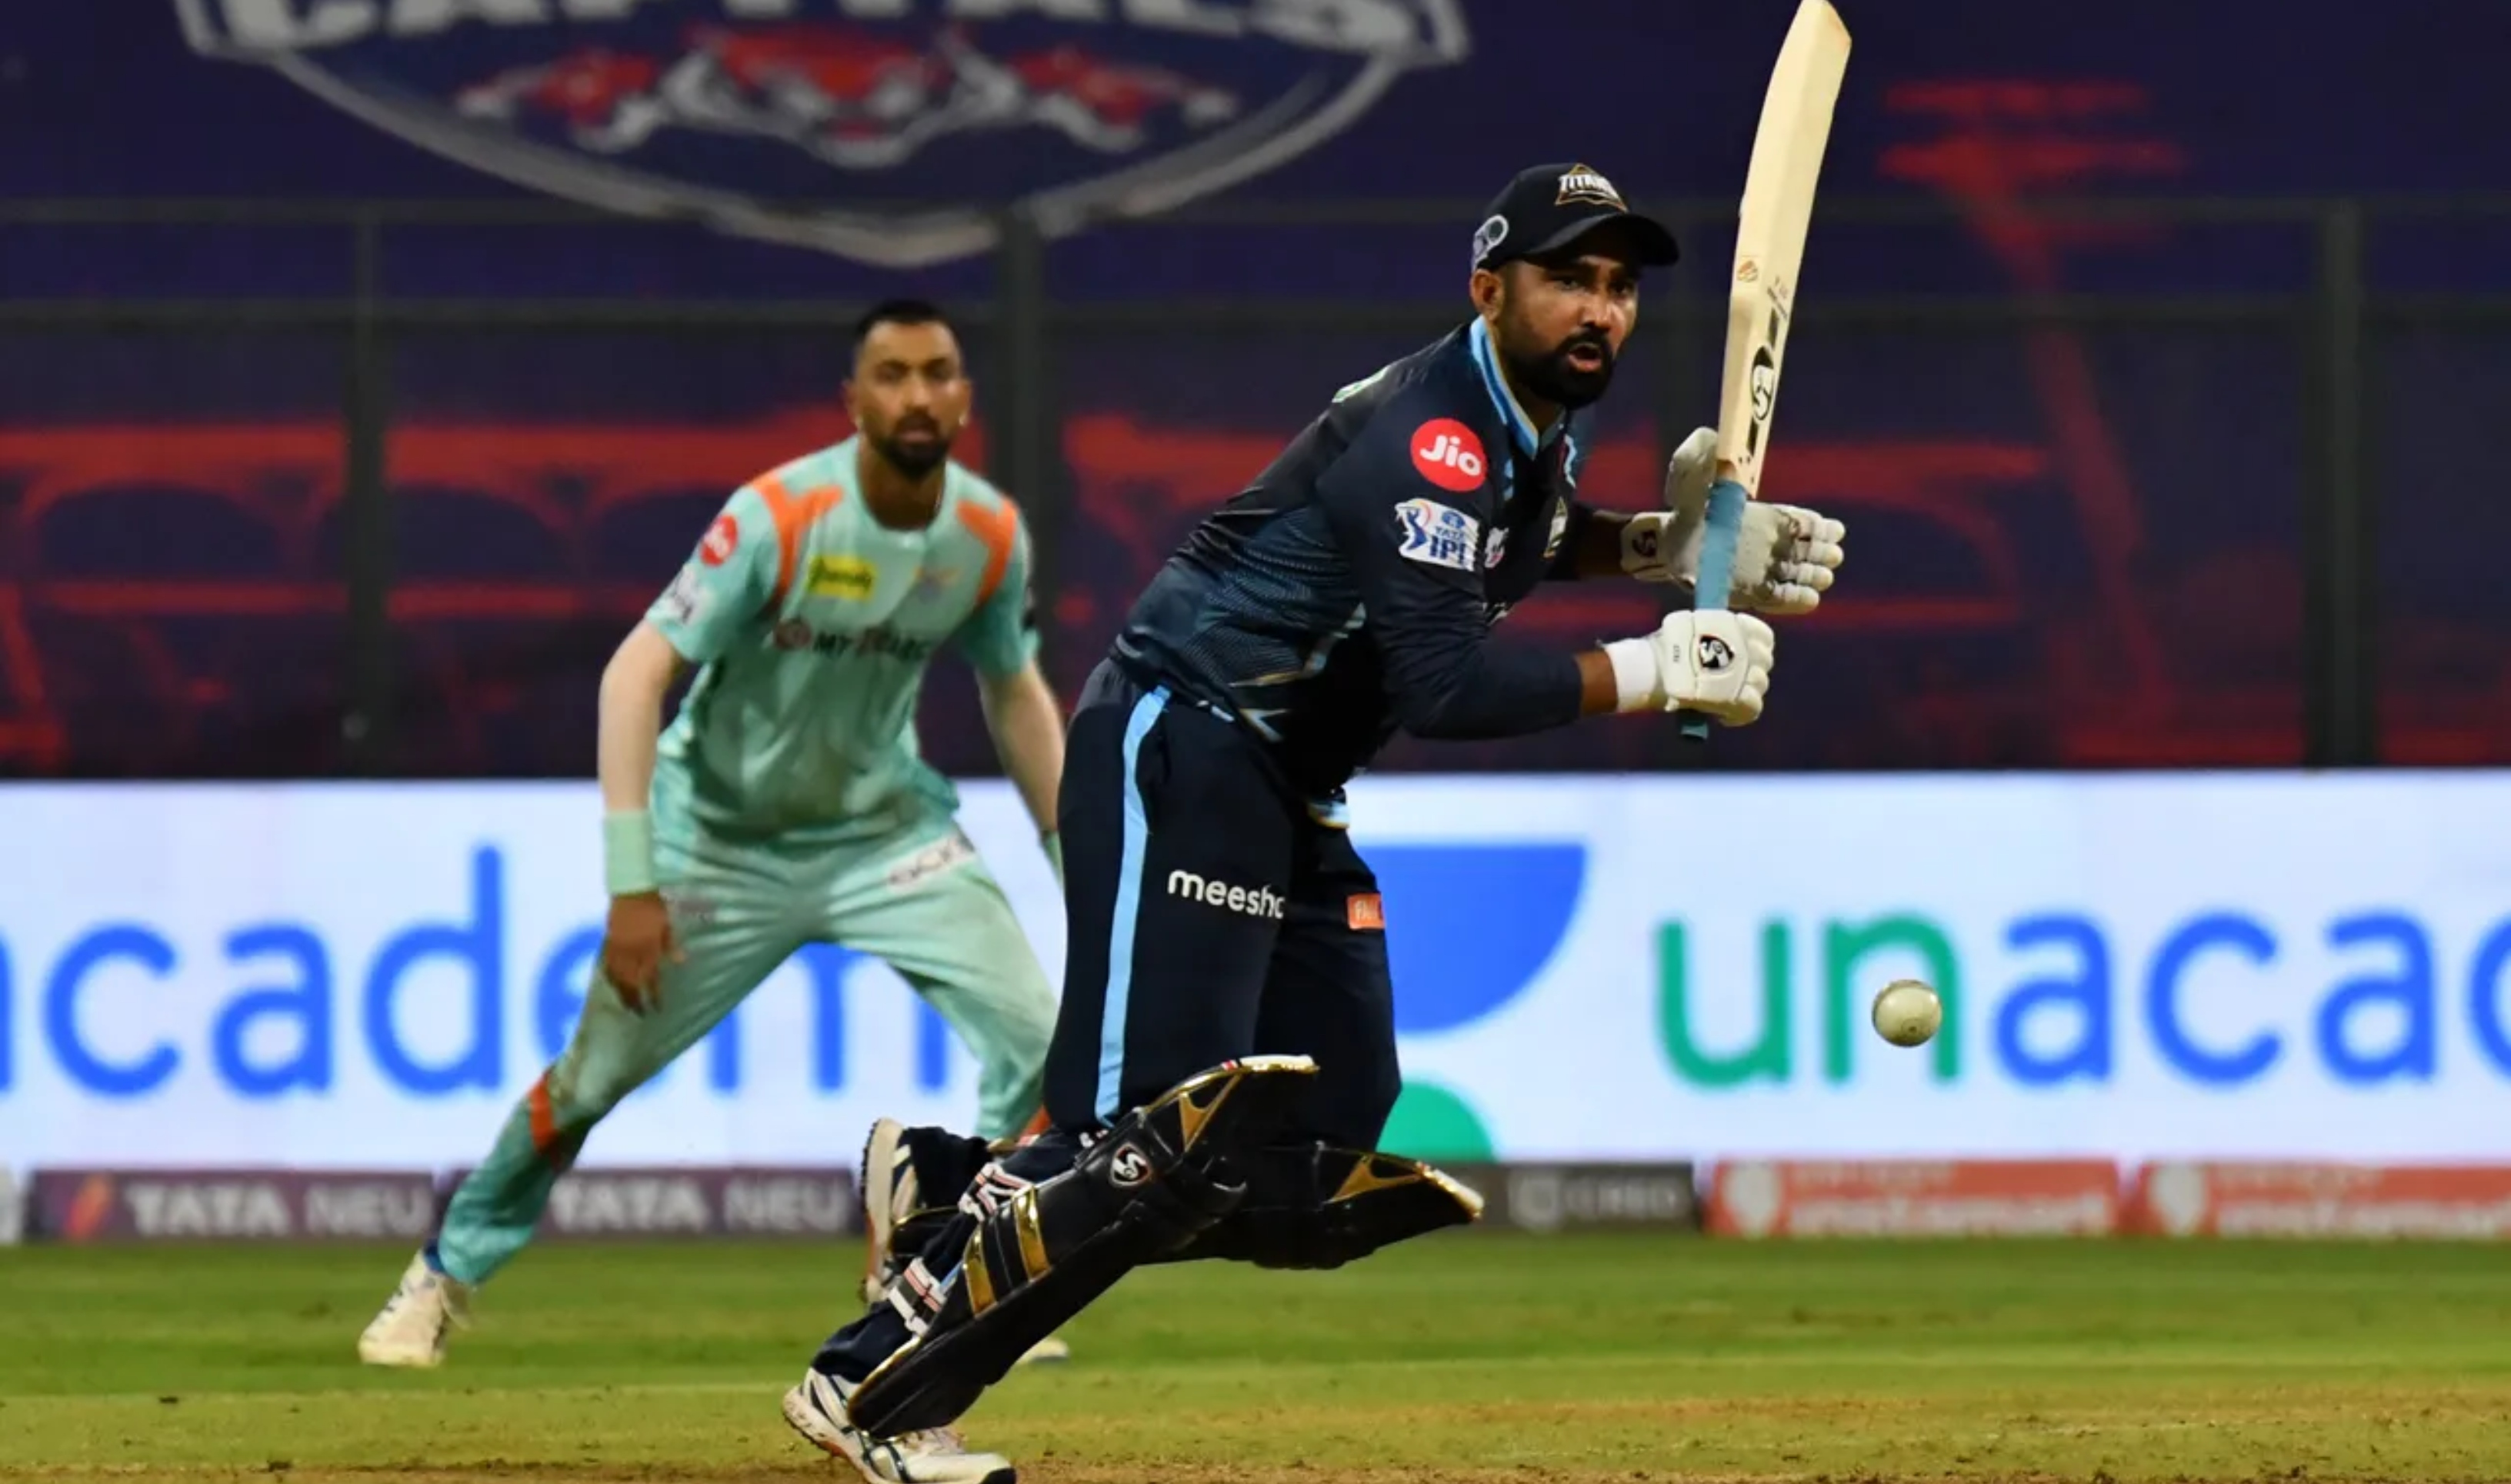 Rahul Tewatia starred with the bat for Gujarat Titans | BCCI/IPL